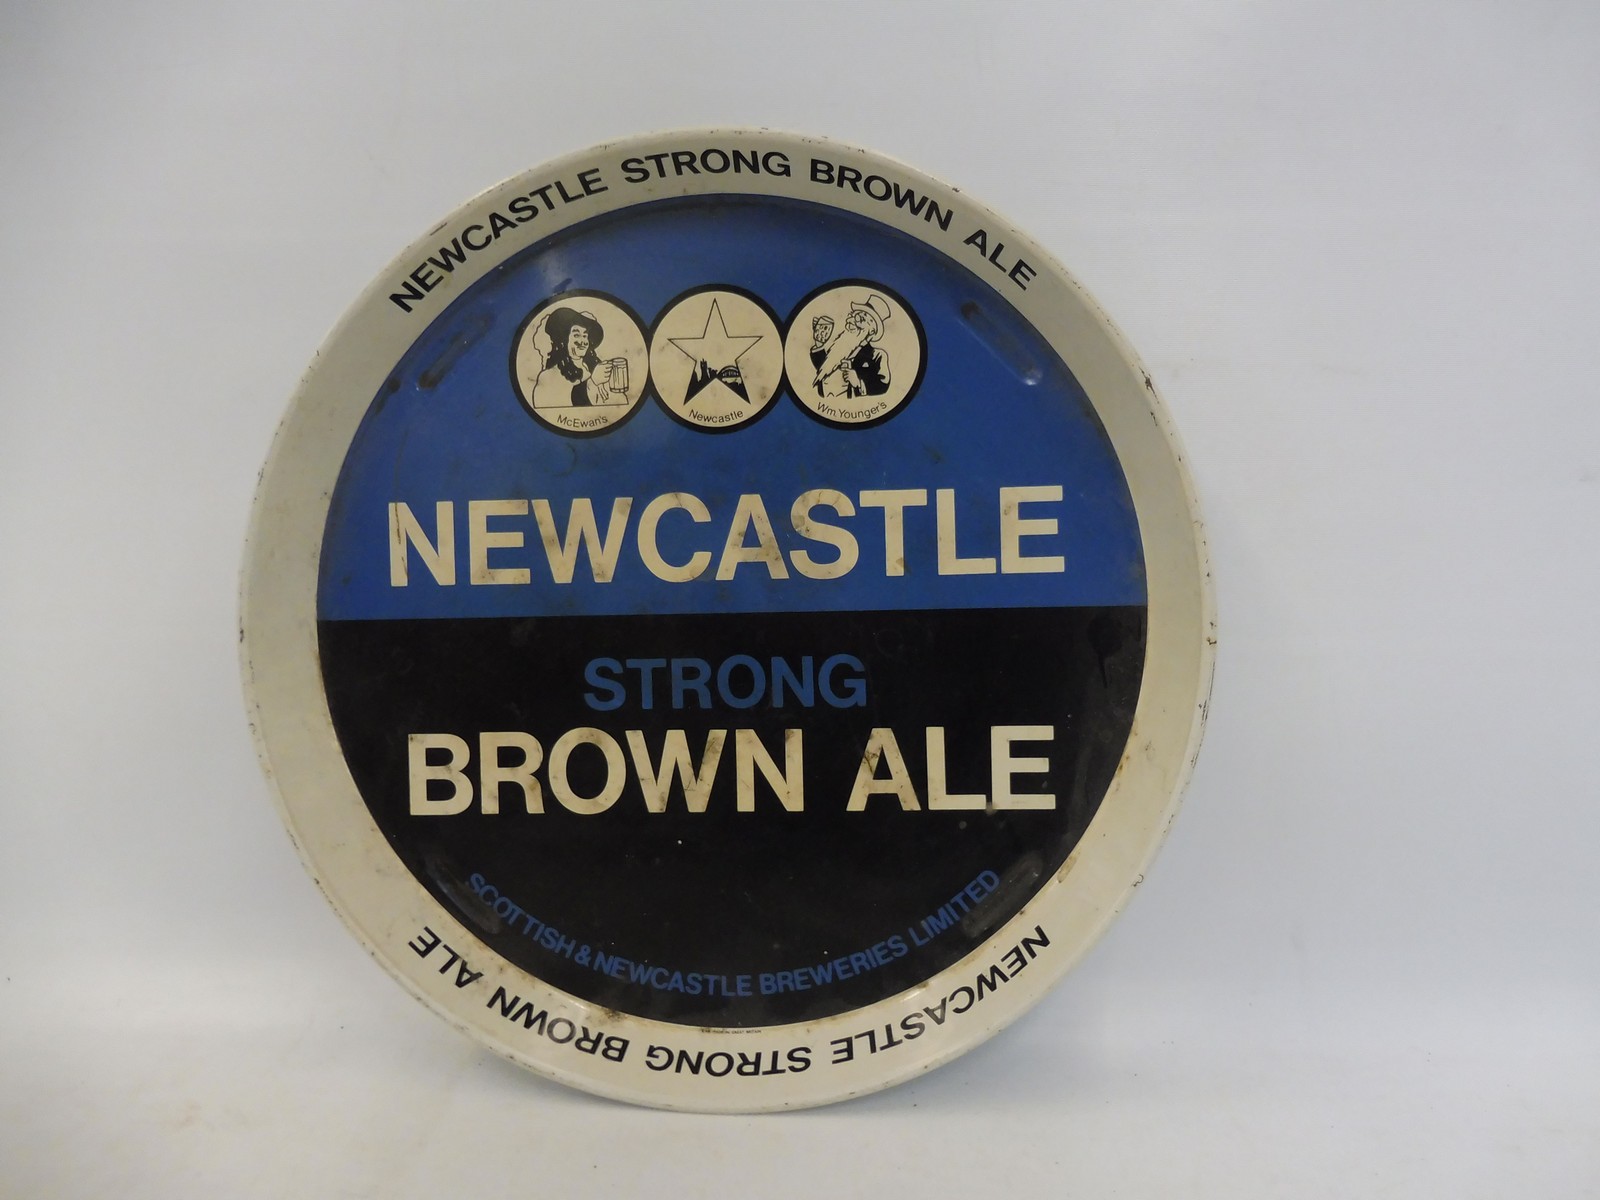 A Newcastle Strong Brown Ale, circa 1960s tray.